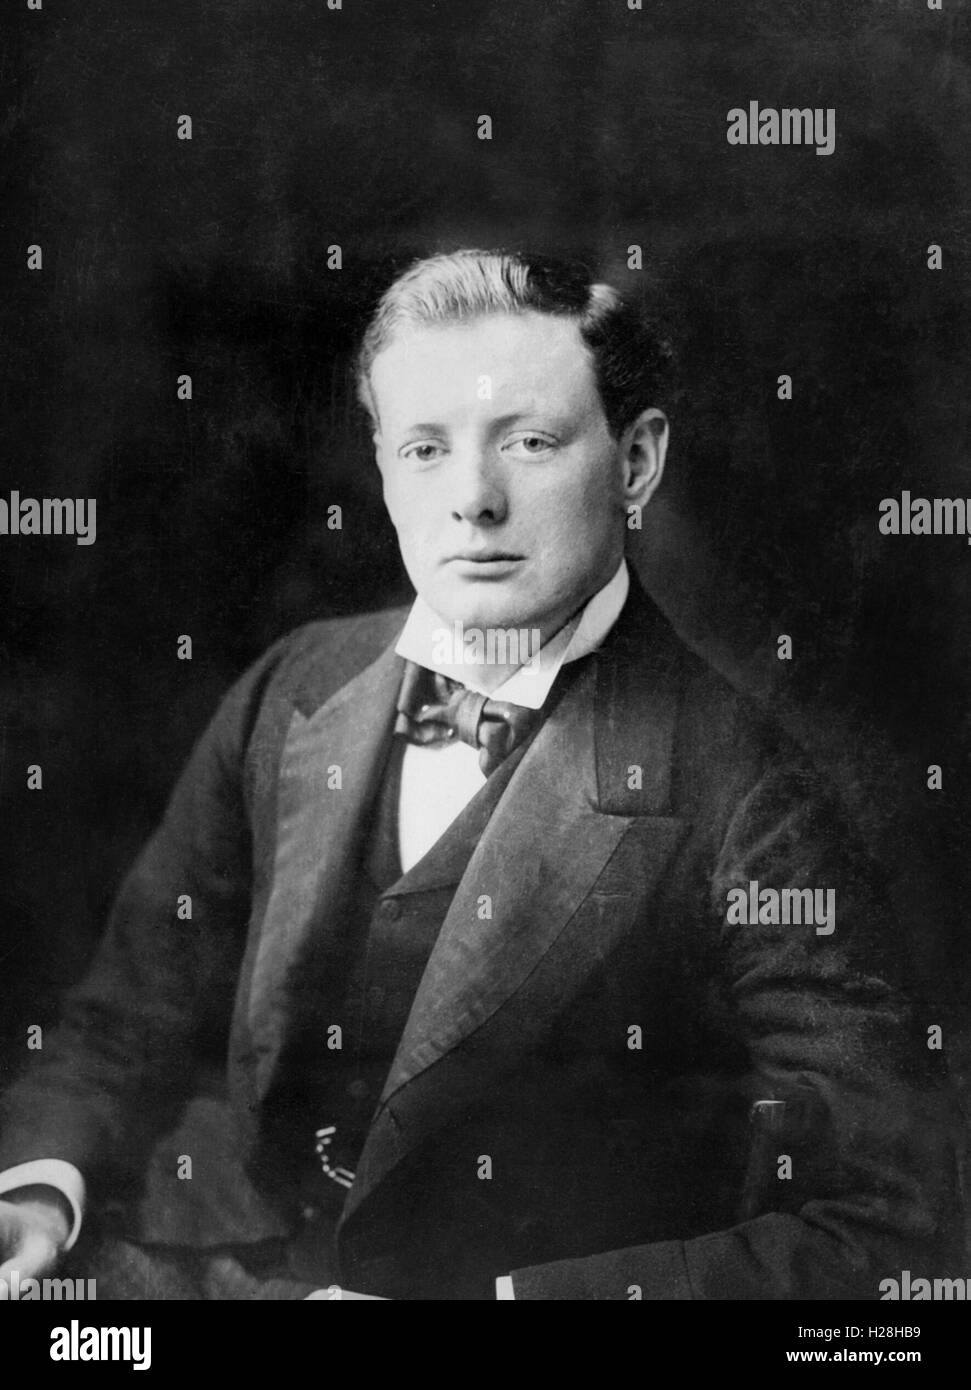 'Jeunes' Winston Churchill en 1900 Banque D'Images